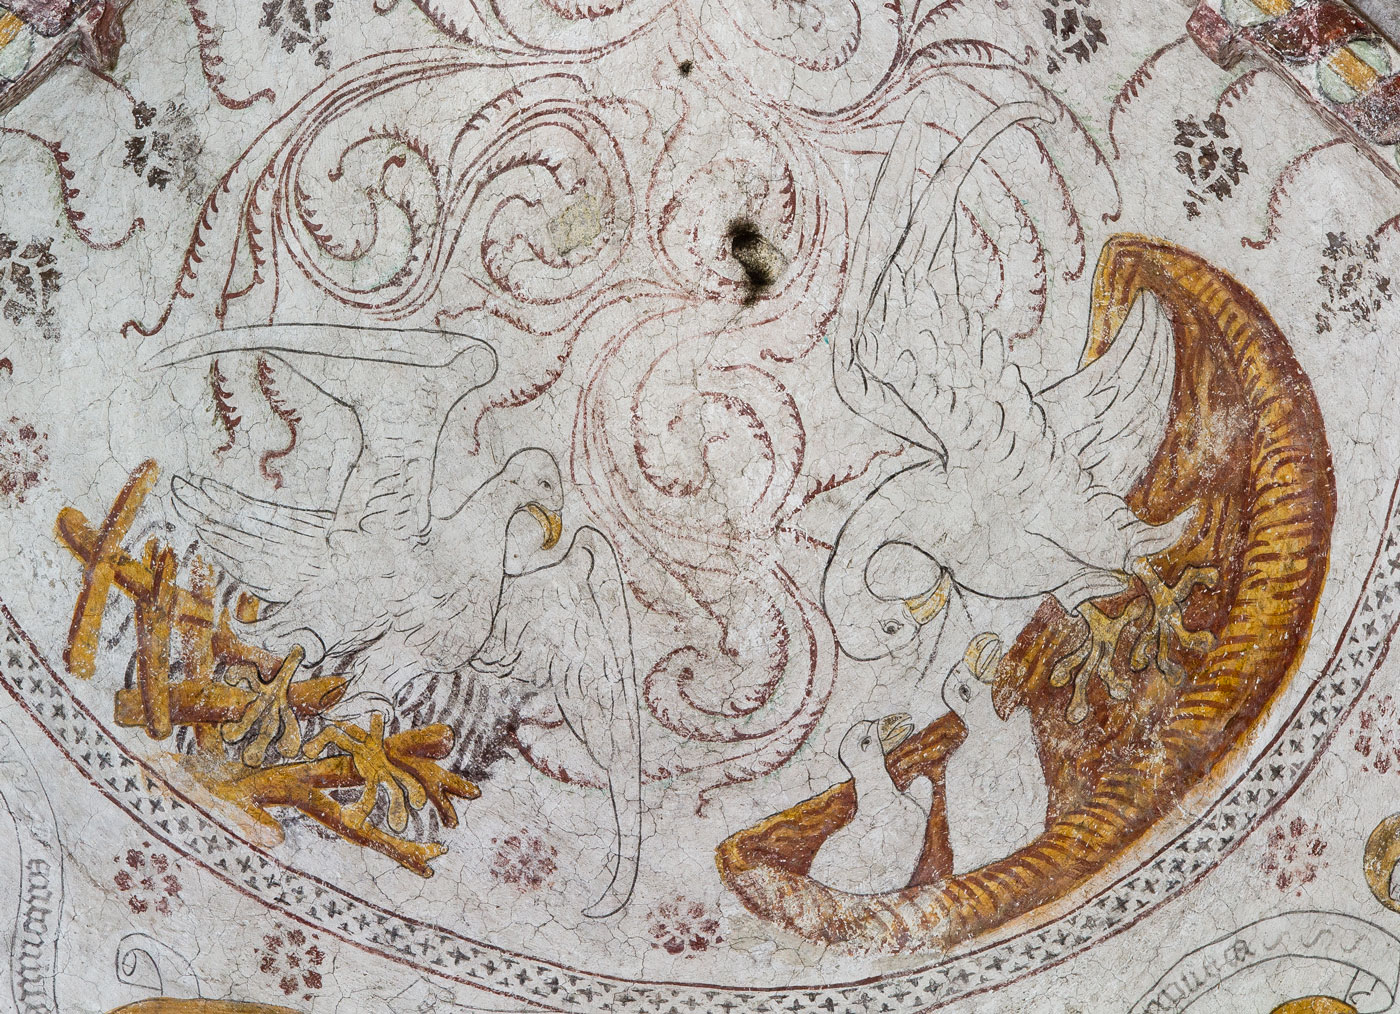 Pelikanen, som matar sina ungar med sitt eget blod (ihopkomponerat med Fågel Fenix) - Almunge kyrka